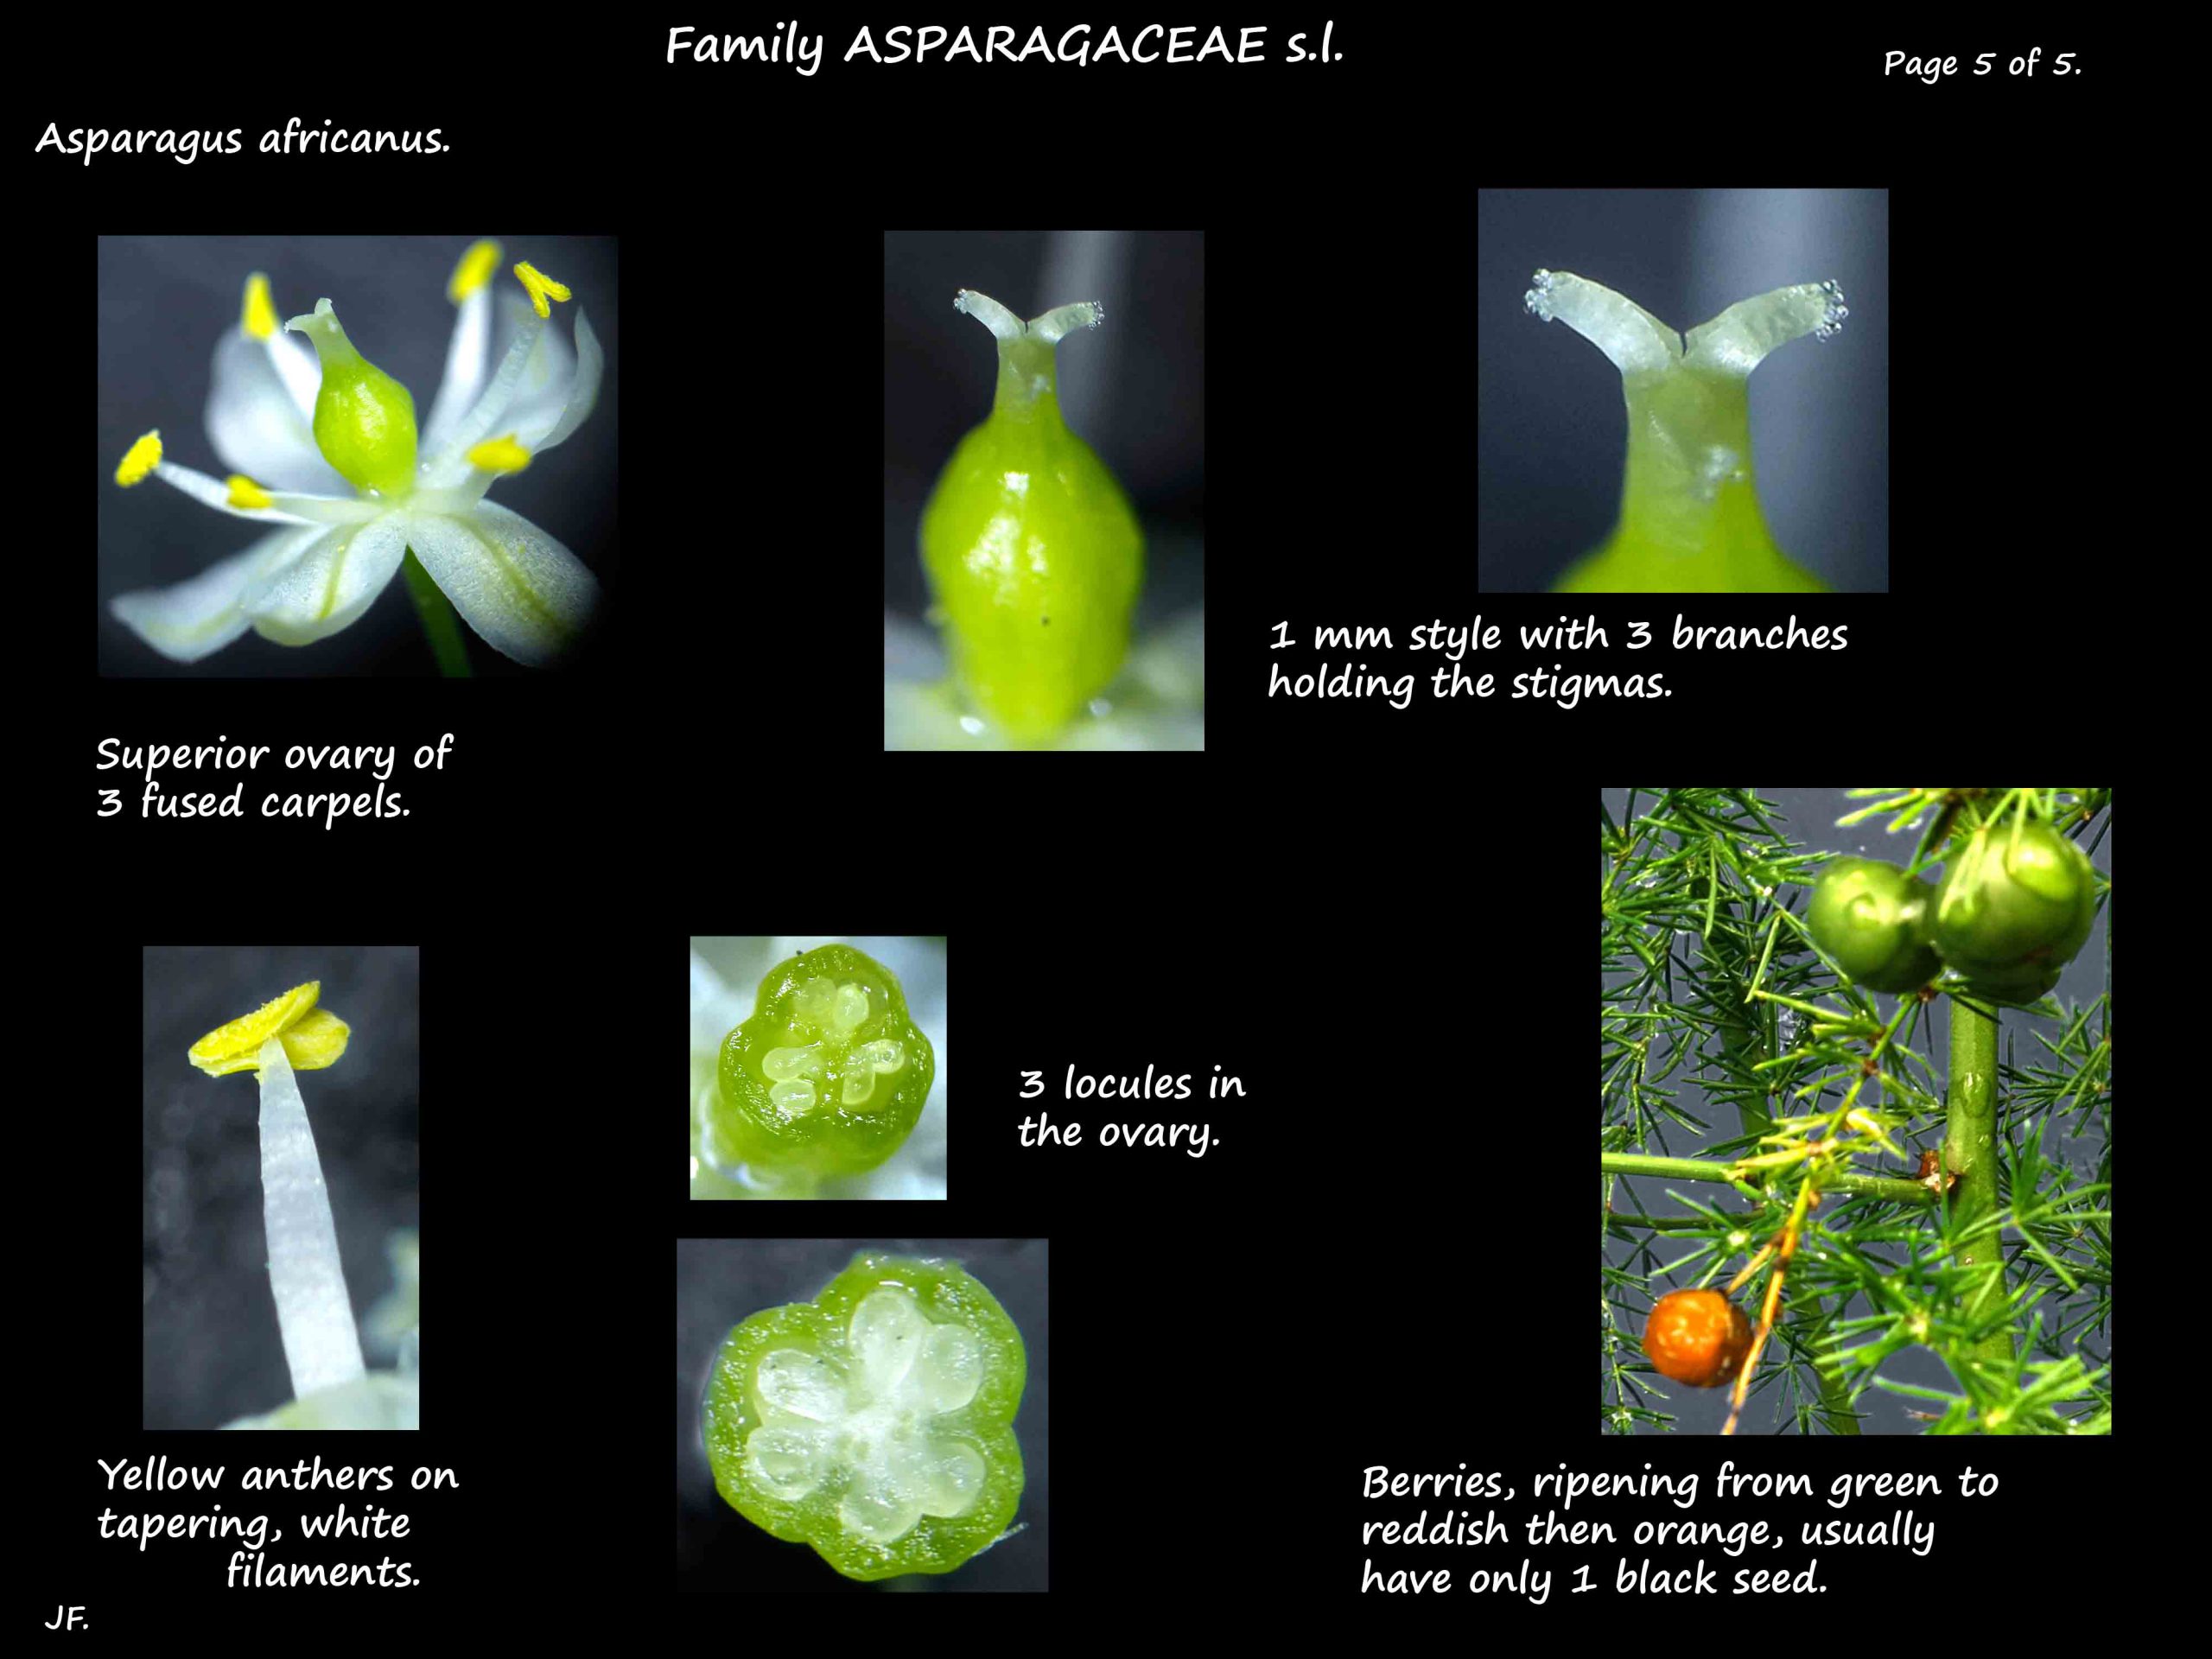 5 Asparagus africanus carpels & fruit